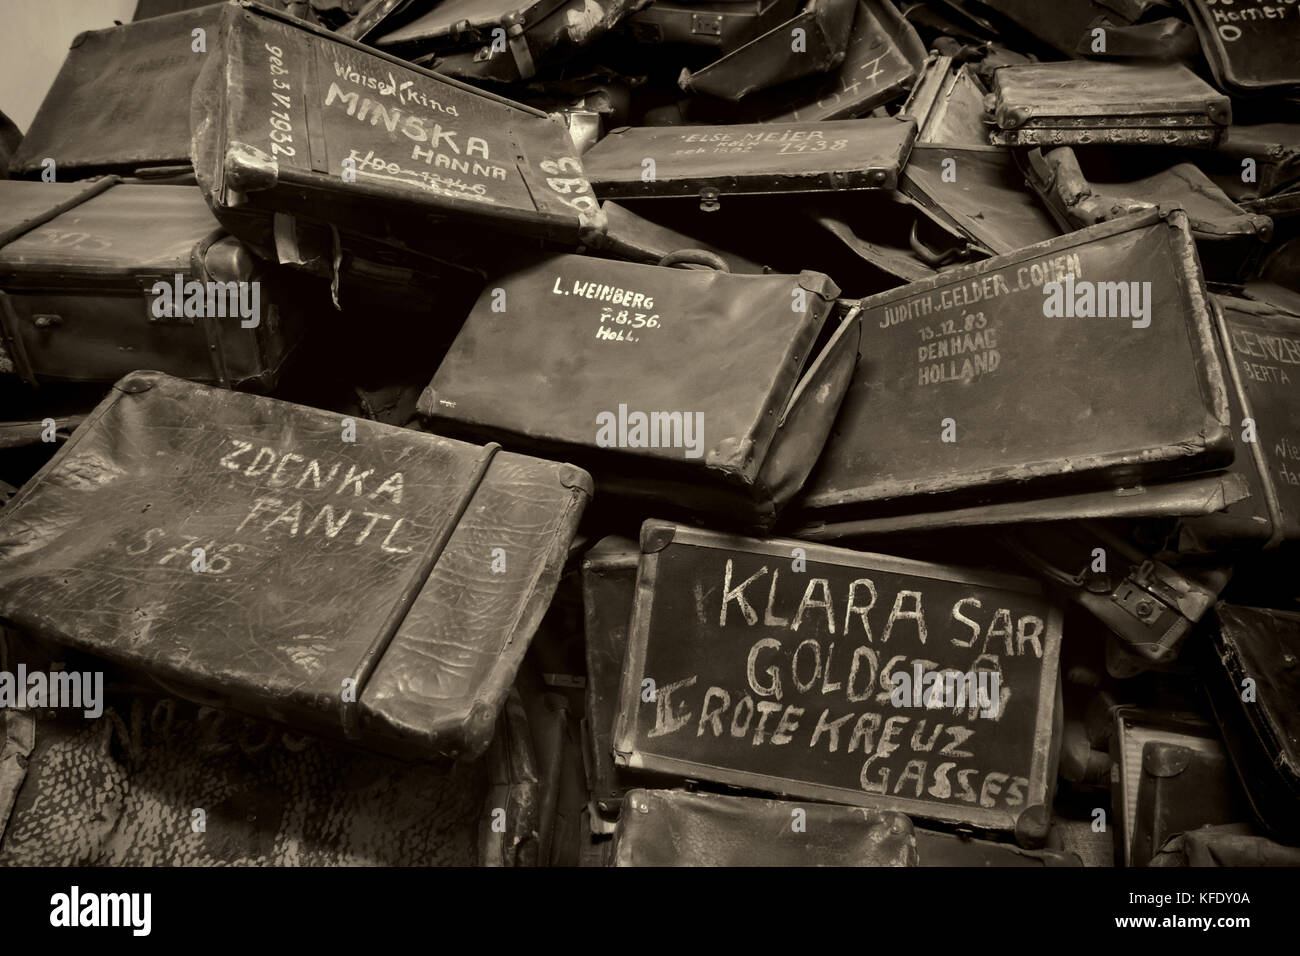 Oswiecim, Polonia - agosto 18: nomi scritti sulle valigie di Auschwitz, il più grande campo di concentramento nazista in Europa il 18 agosto 2015 a Oswiecim, polan Foto Stock